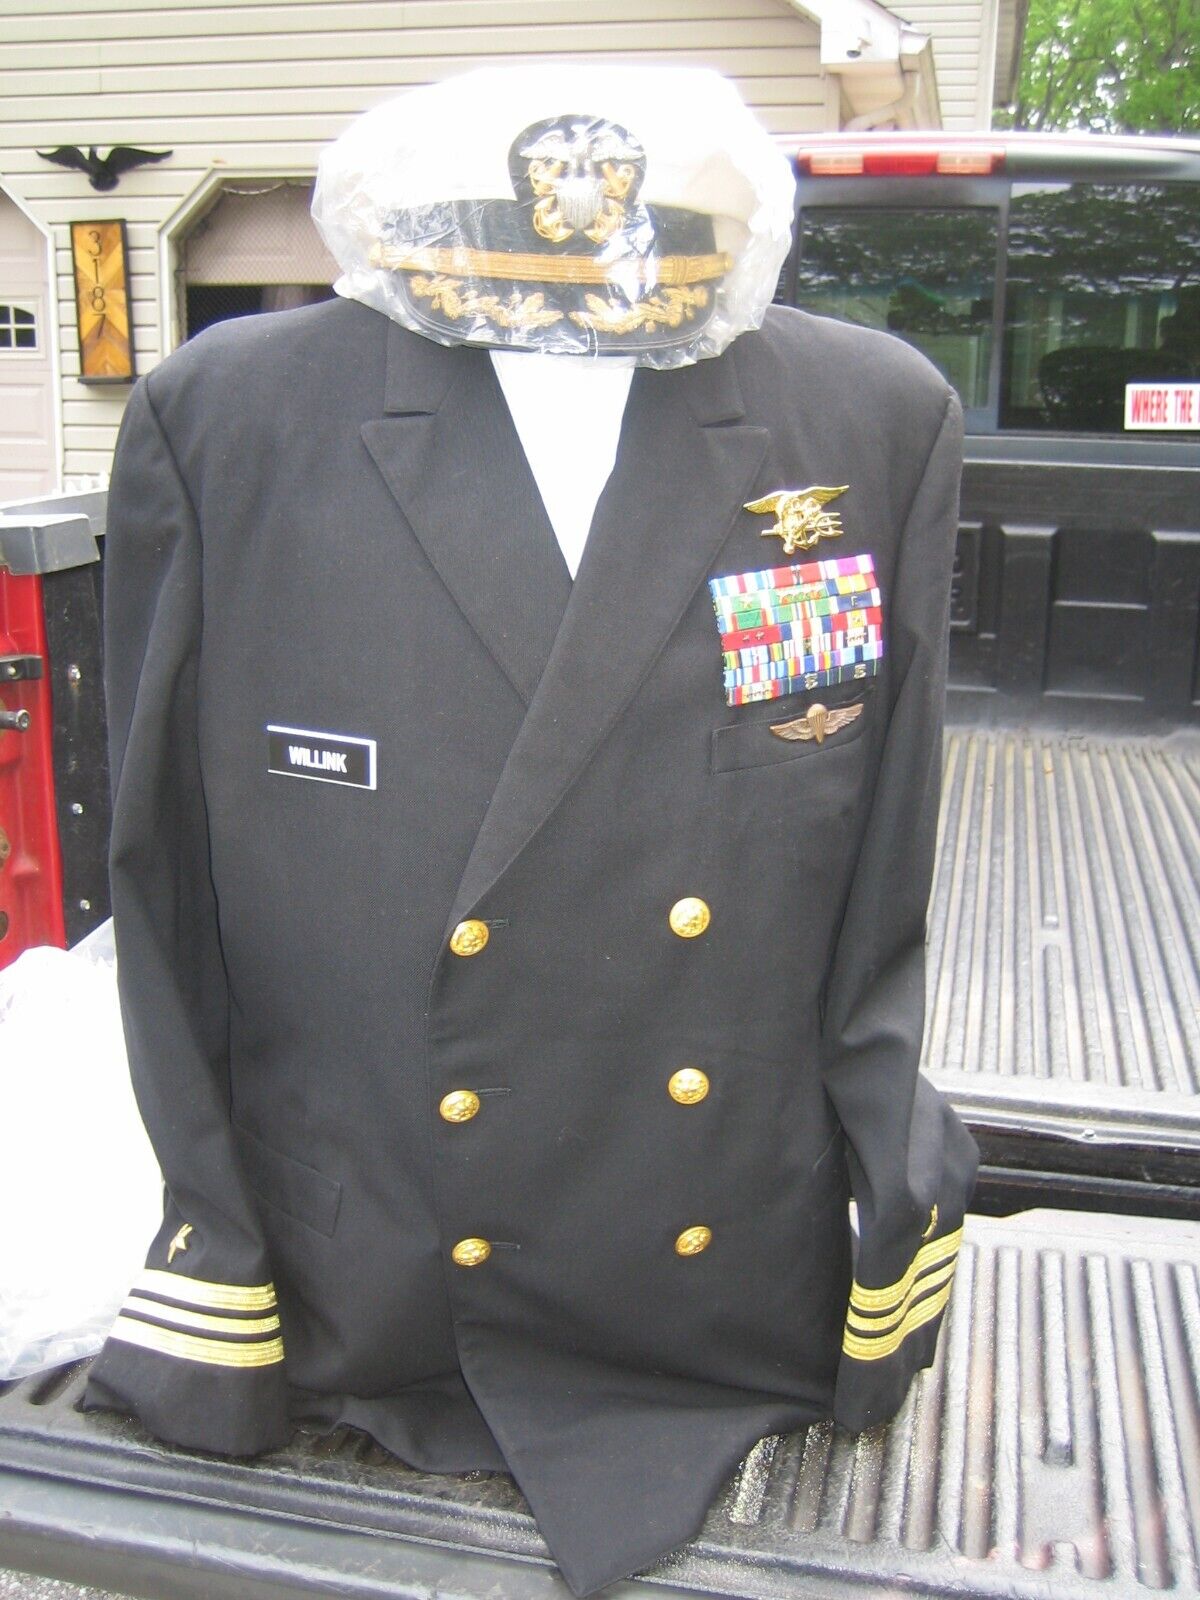 US Navy Seal Lt Commanders Uniform - Jocko Willink